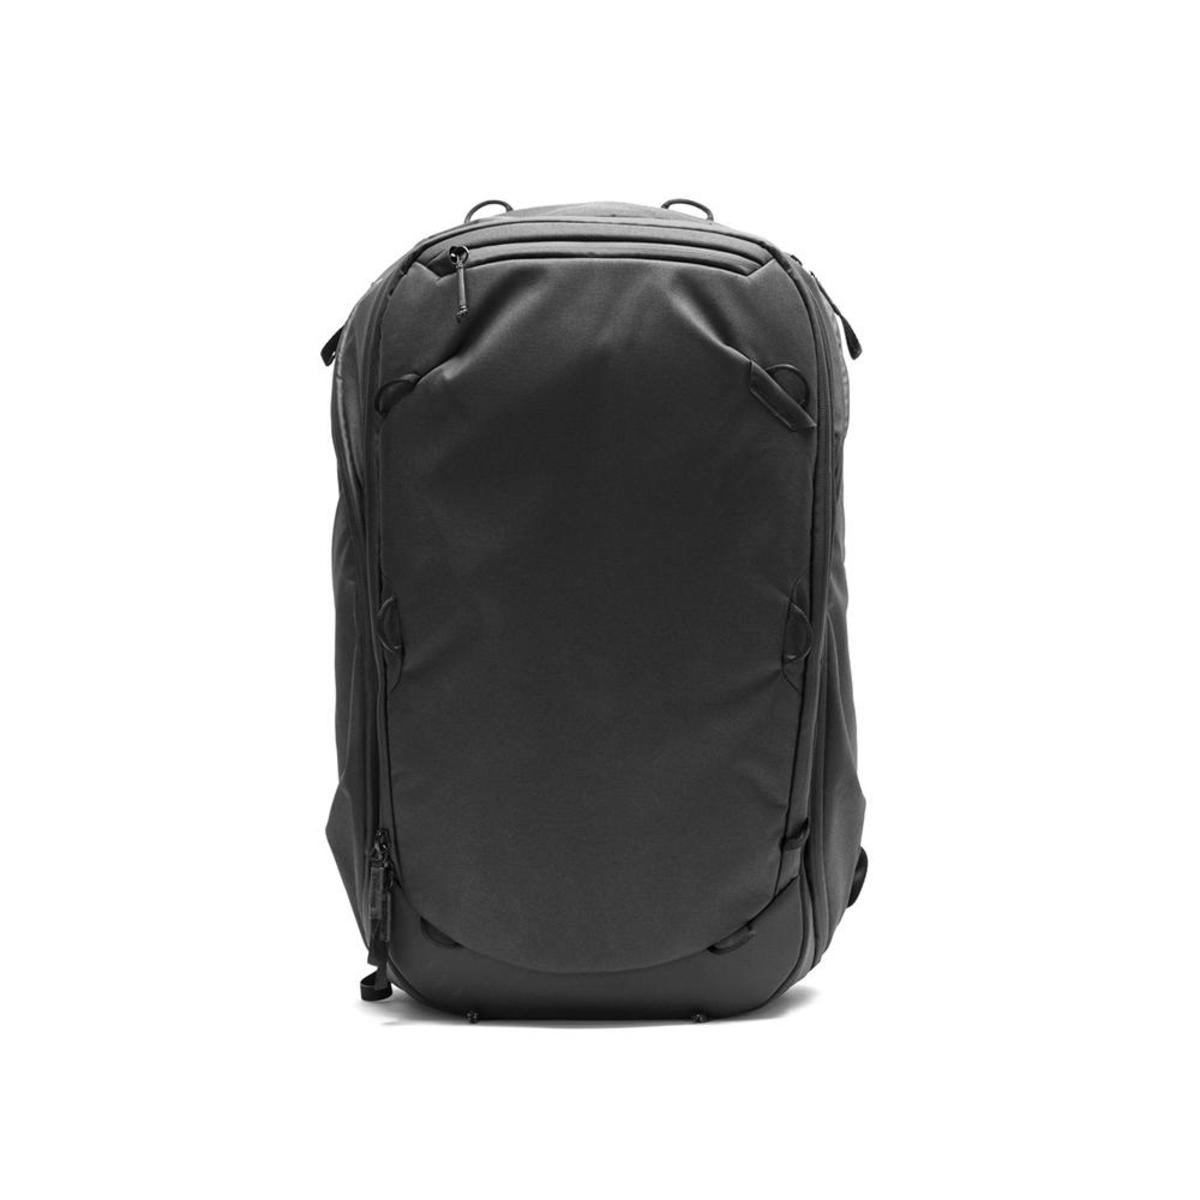 PEAK DESIGN - Travel Backpack - 45L Multifunctional Photography Backpack - Black